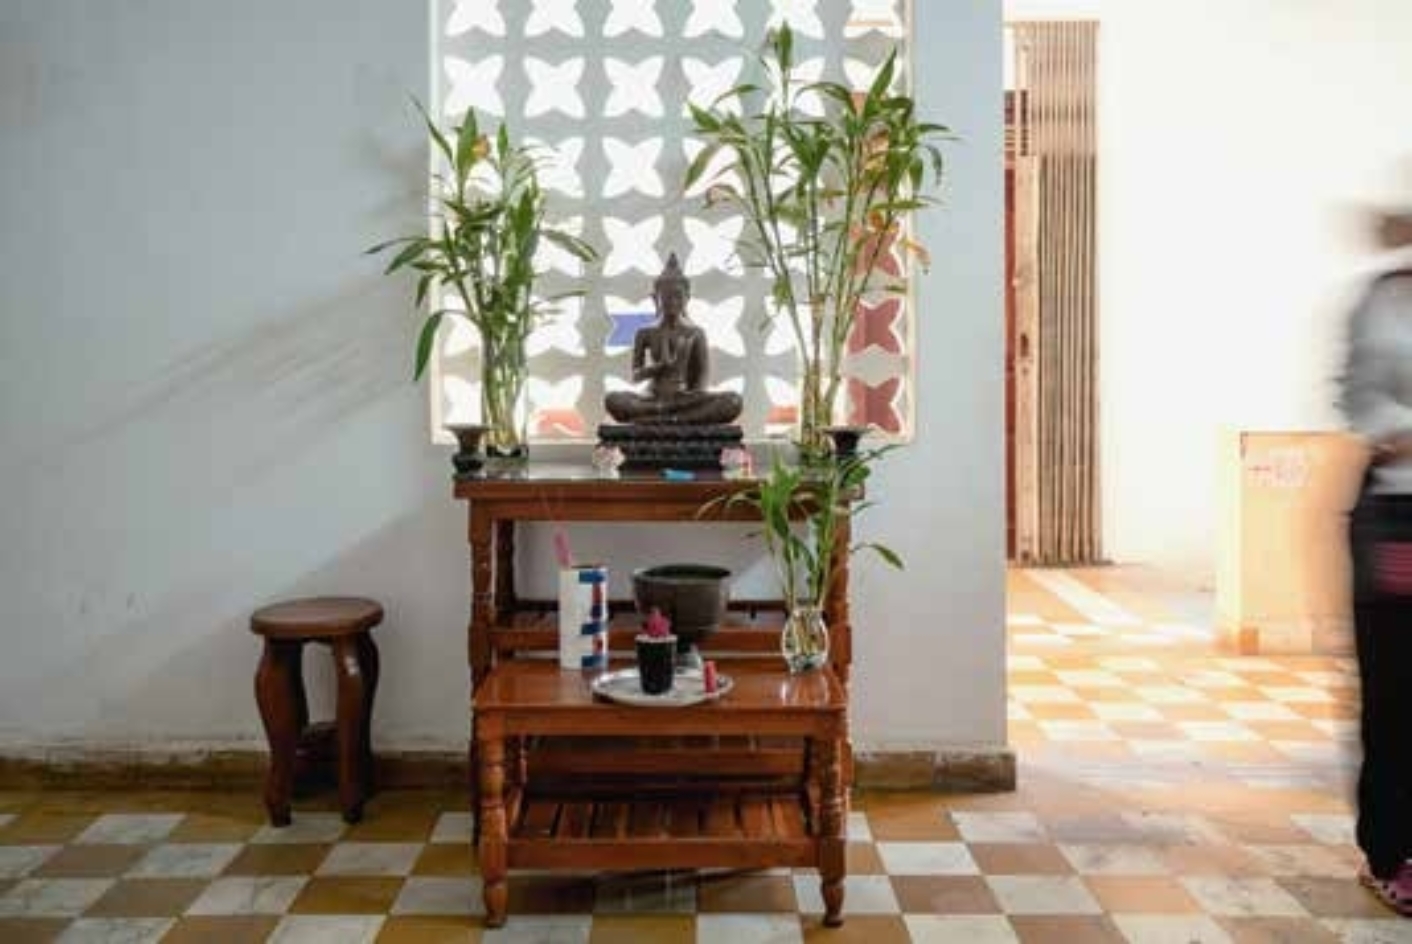 Innenansicht des Tuol Sleng Museums: kleines Regal, Pflanzen, Hocker